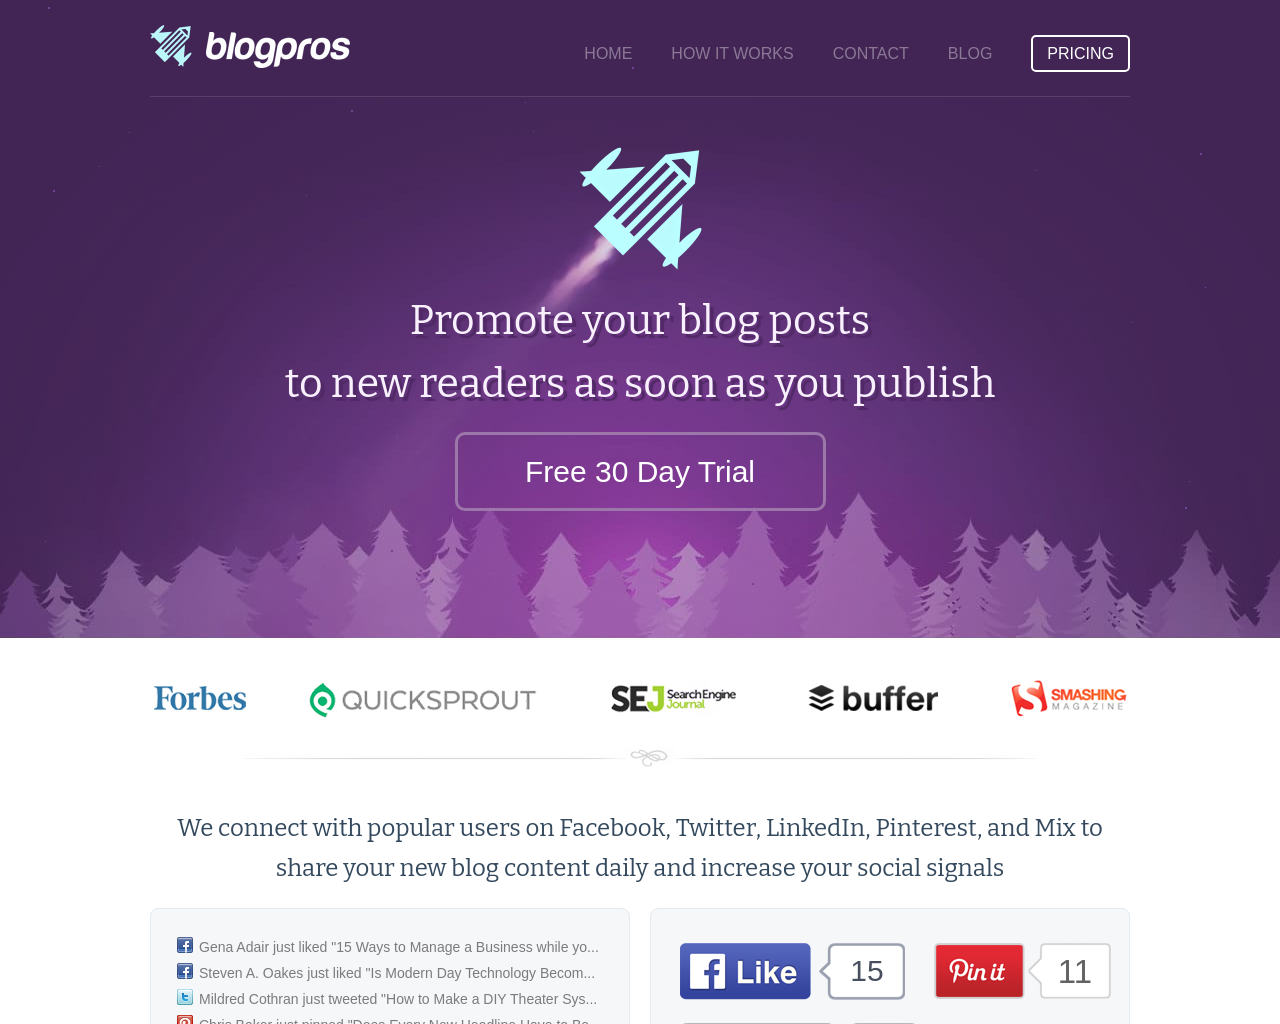 blogpros.com